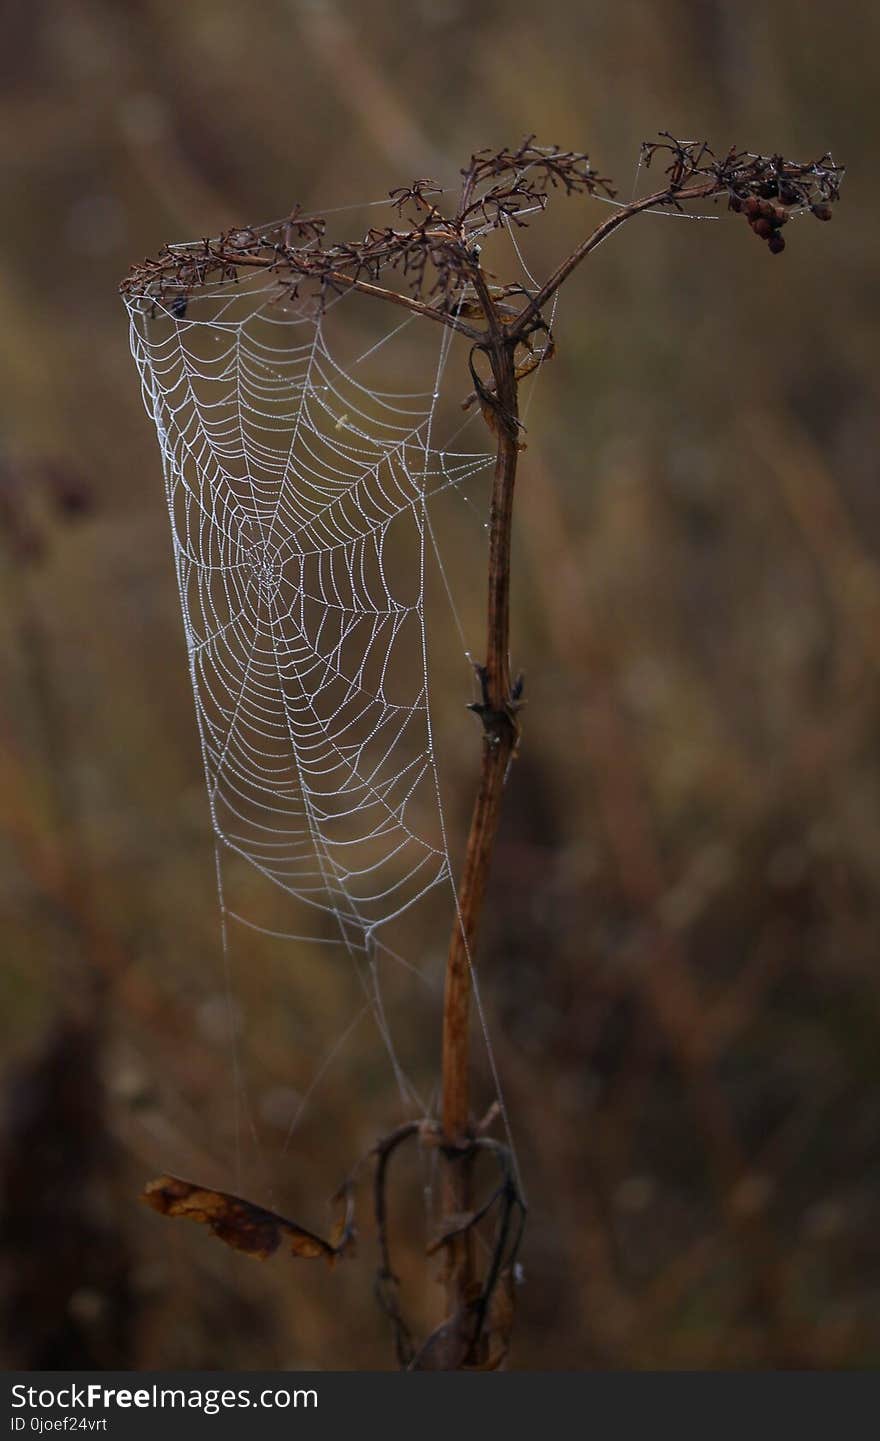 Spider Web, Arachnid, Spider, Branch